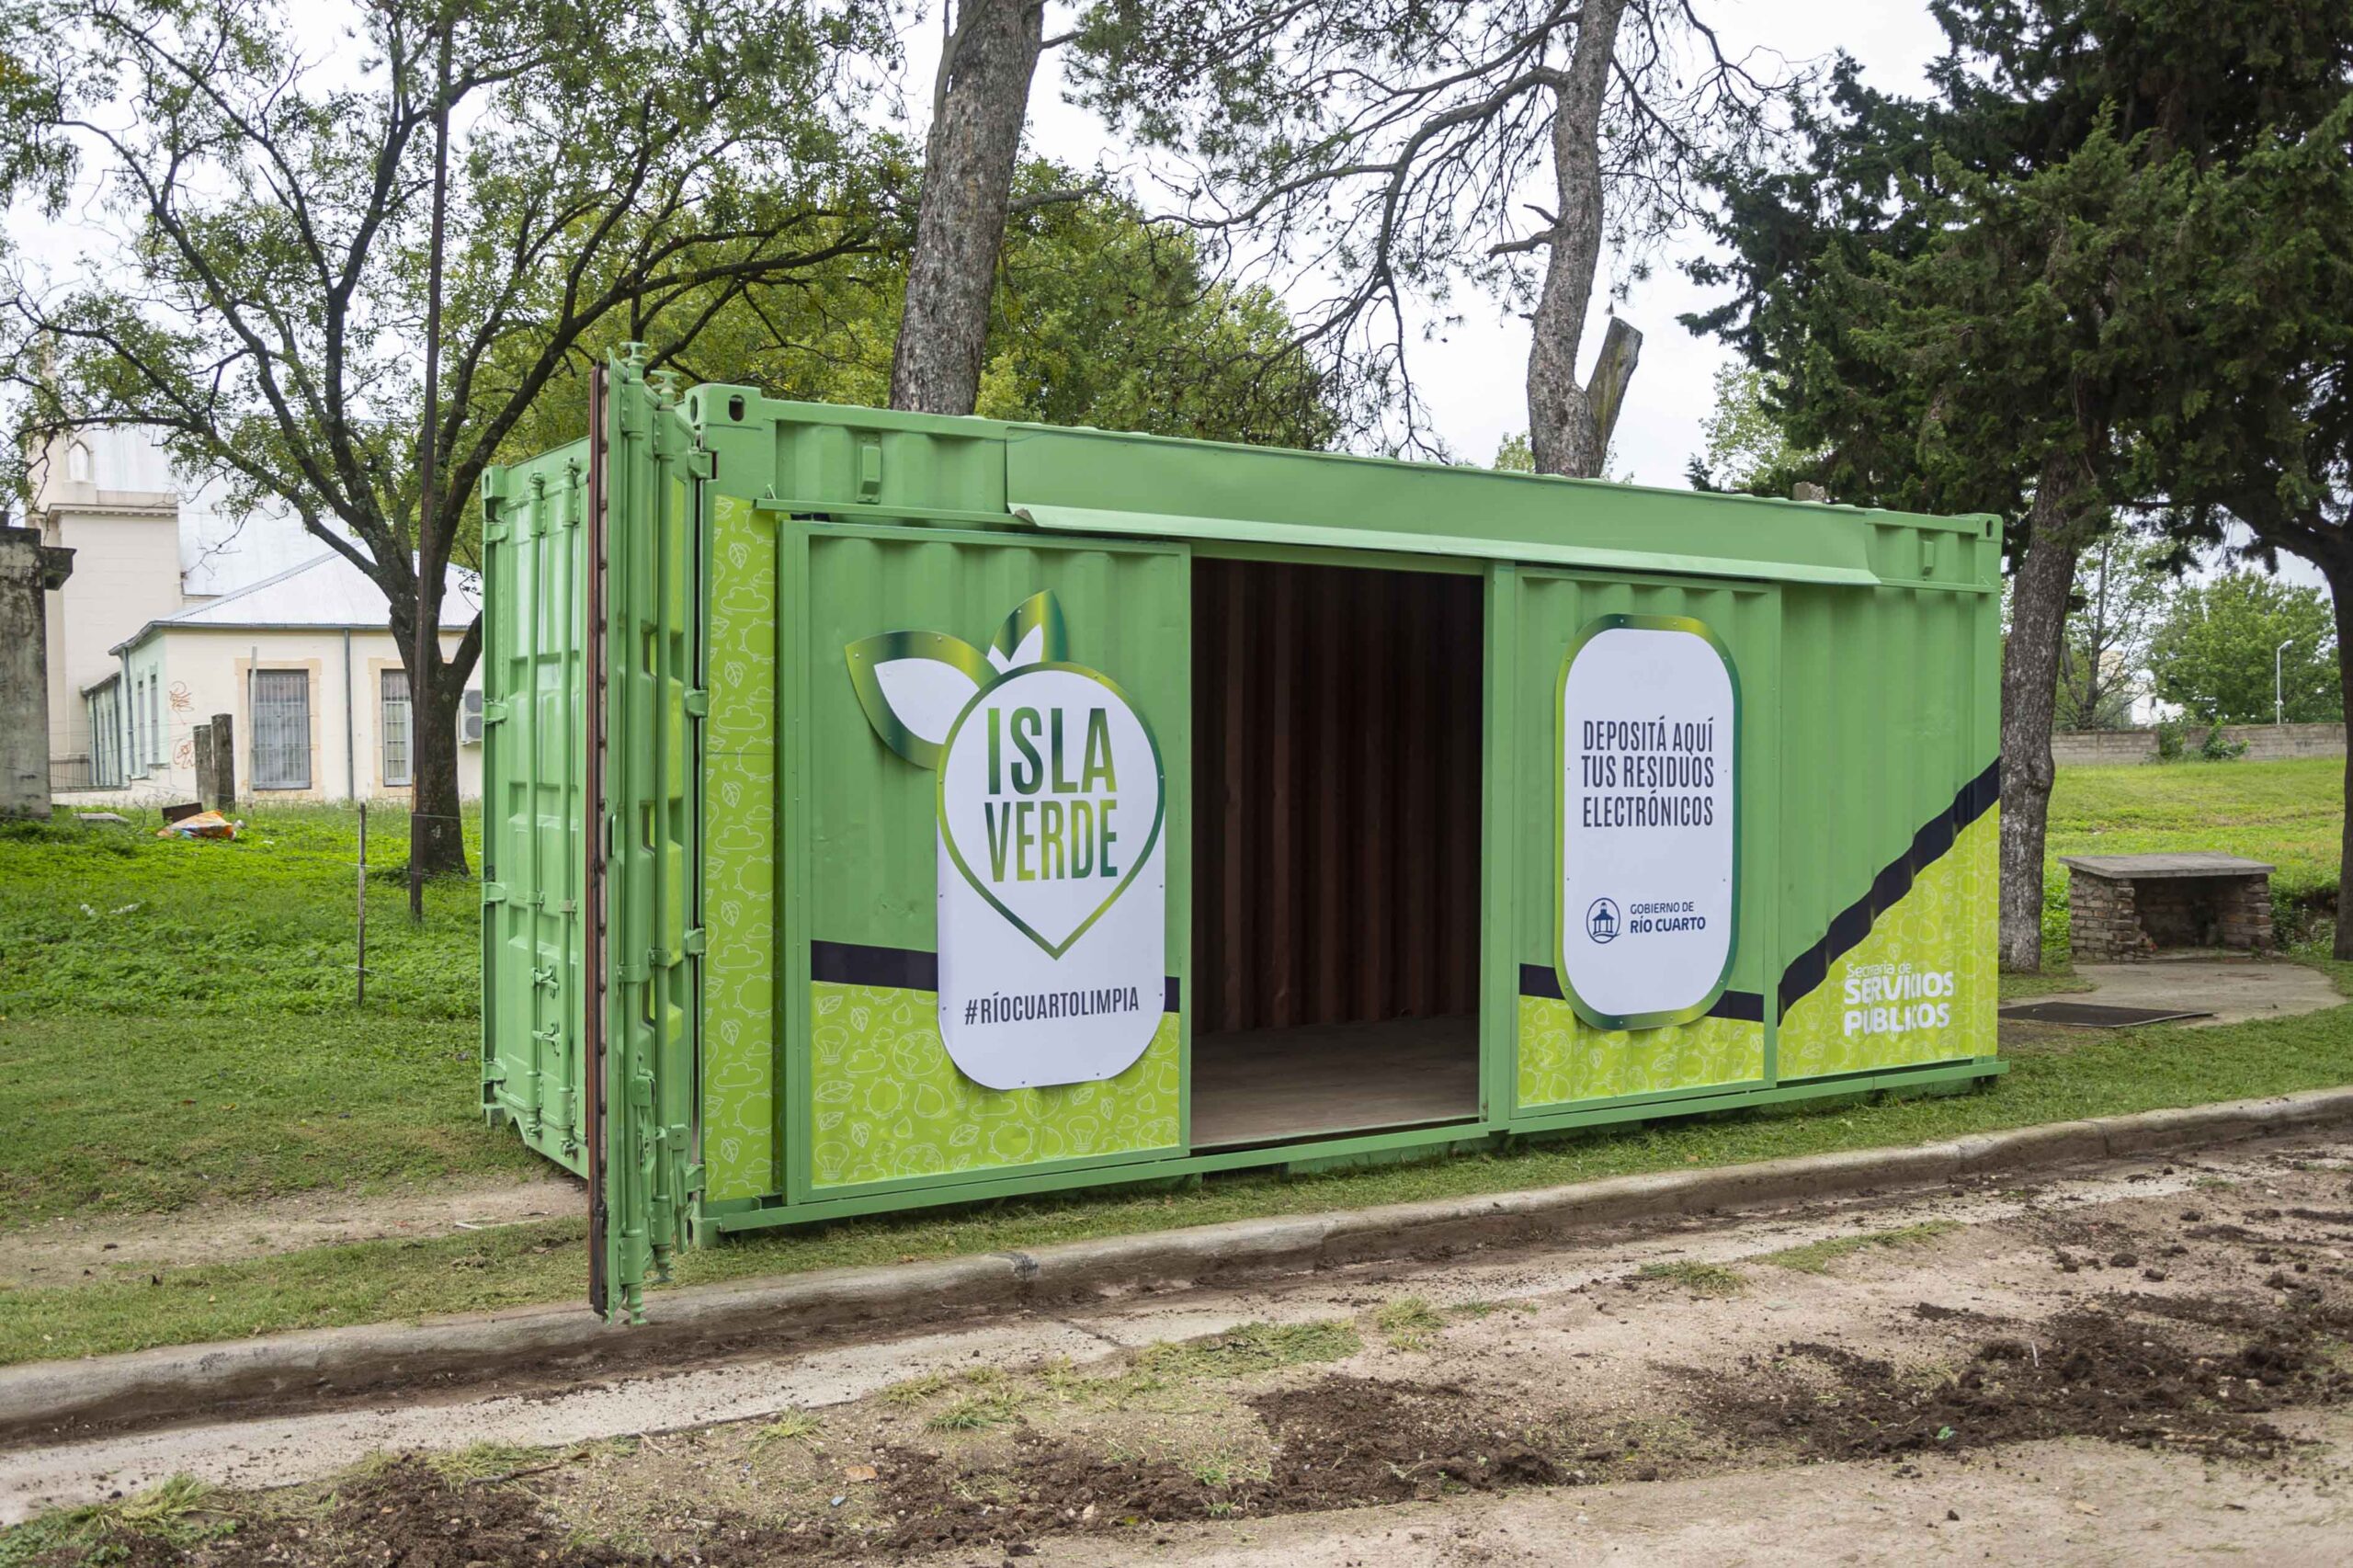 Río Cuarto: Manejo de residuos para contribuir a la sustentabilidad